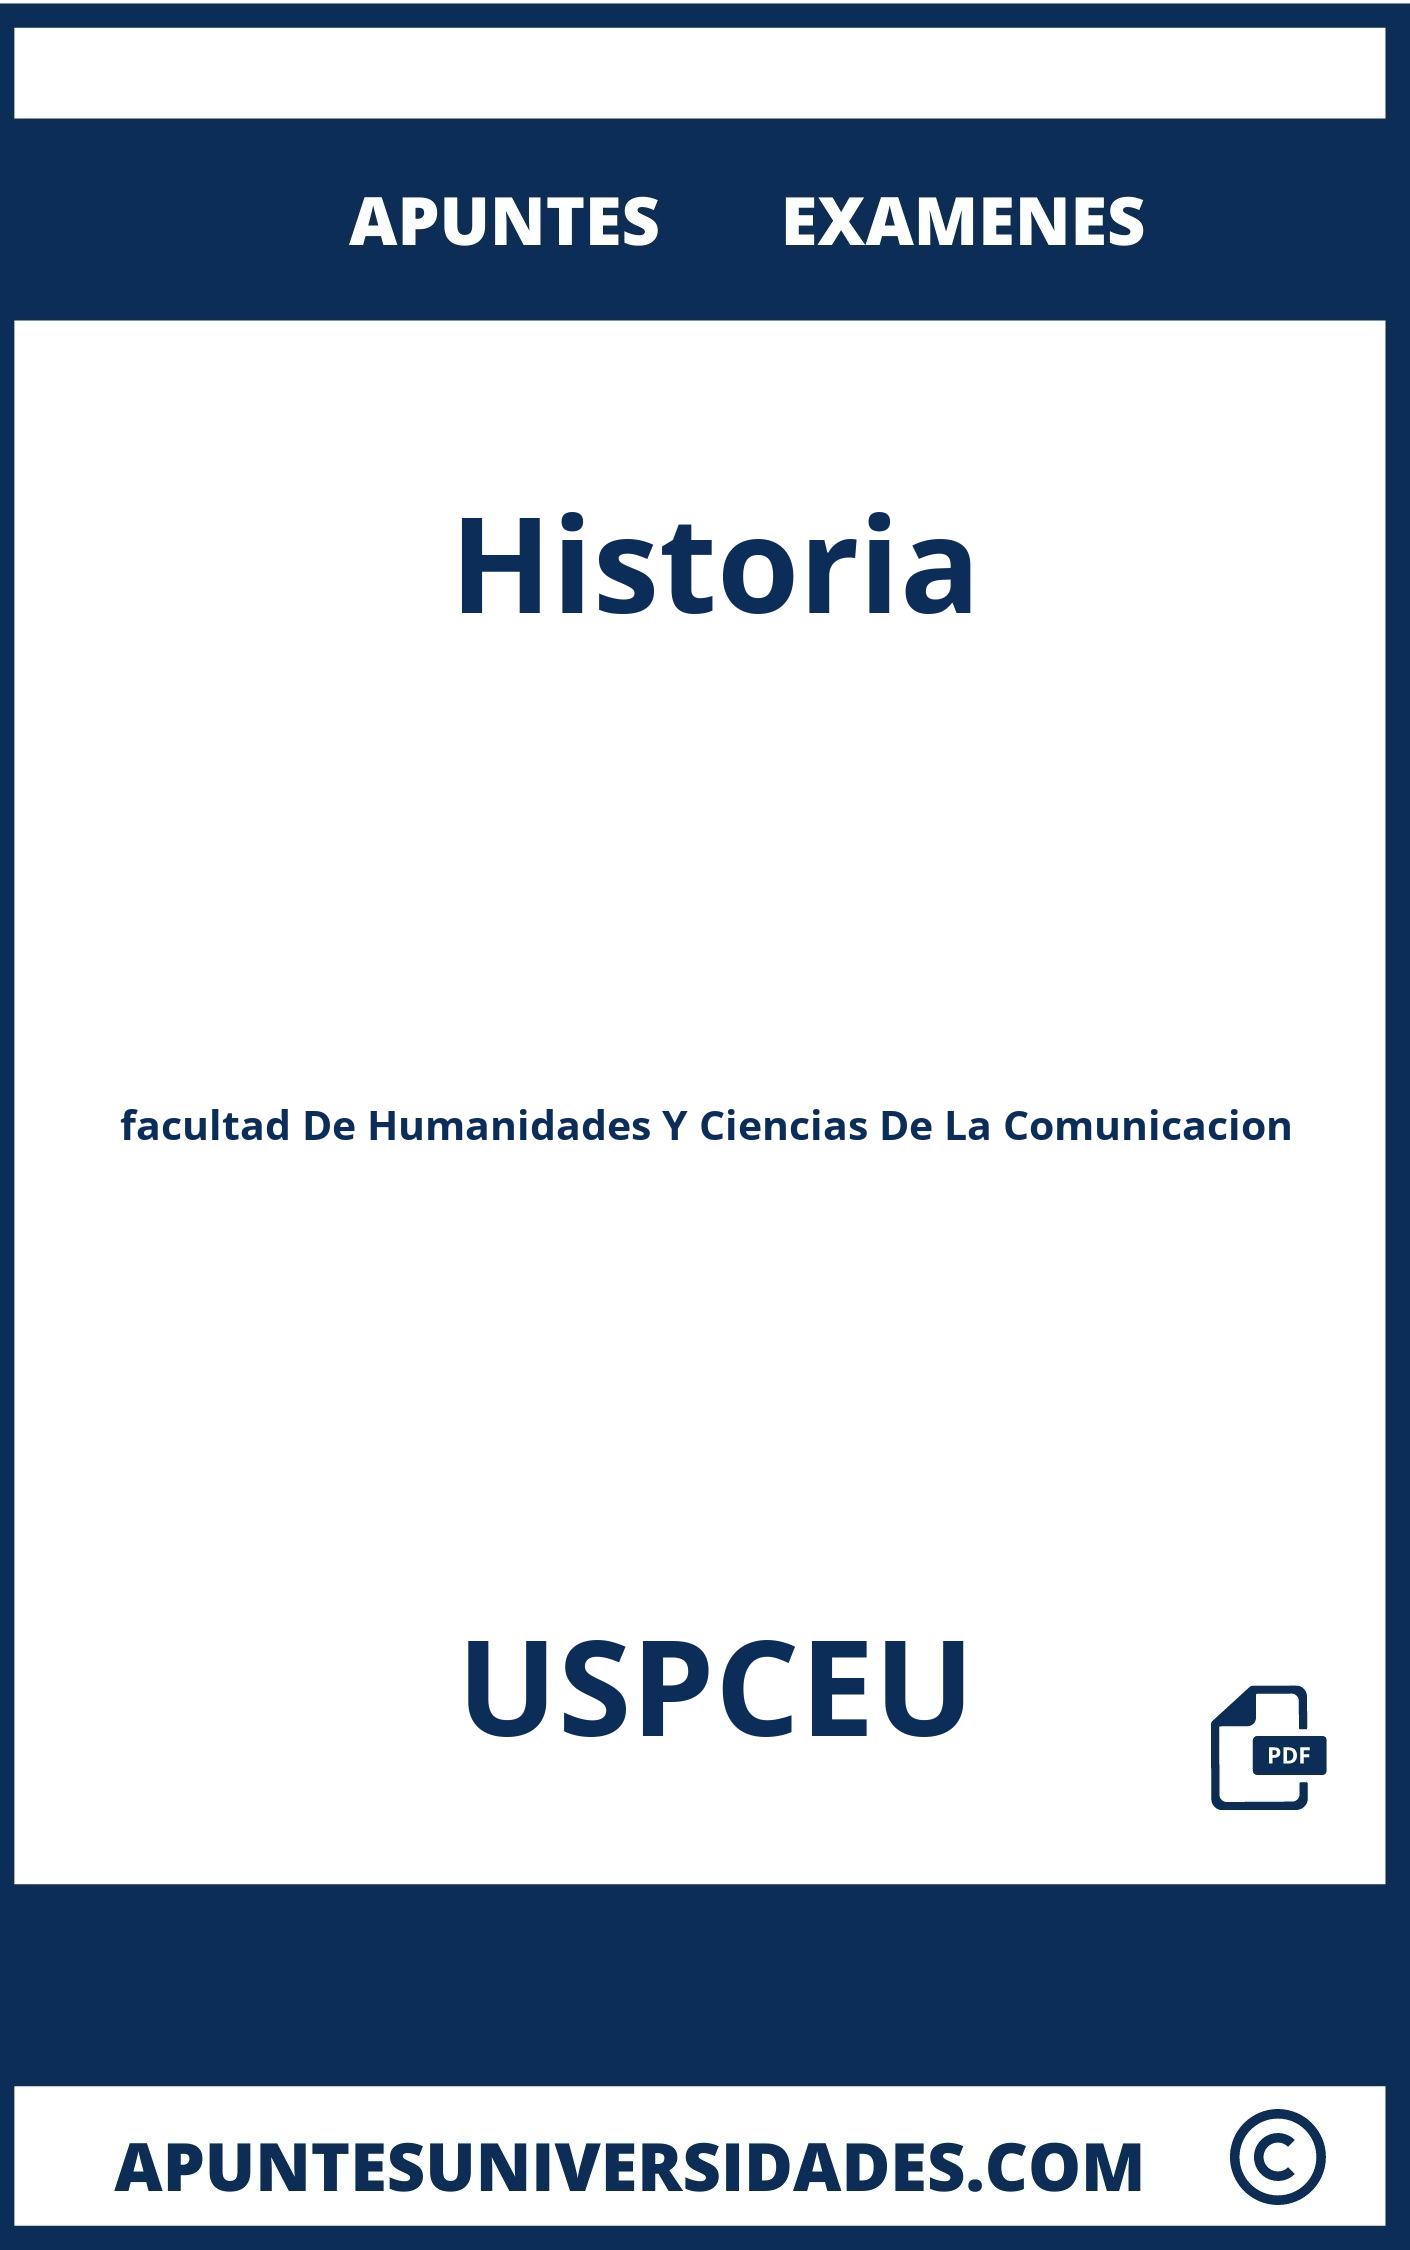 Examenes y Apuntes de Historia USPCEU